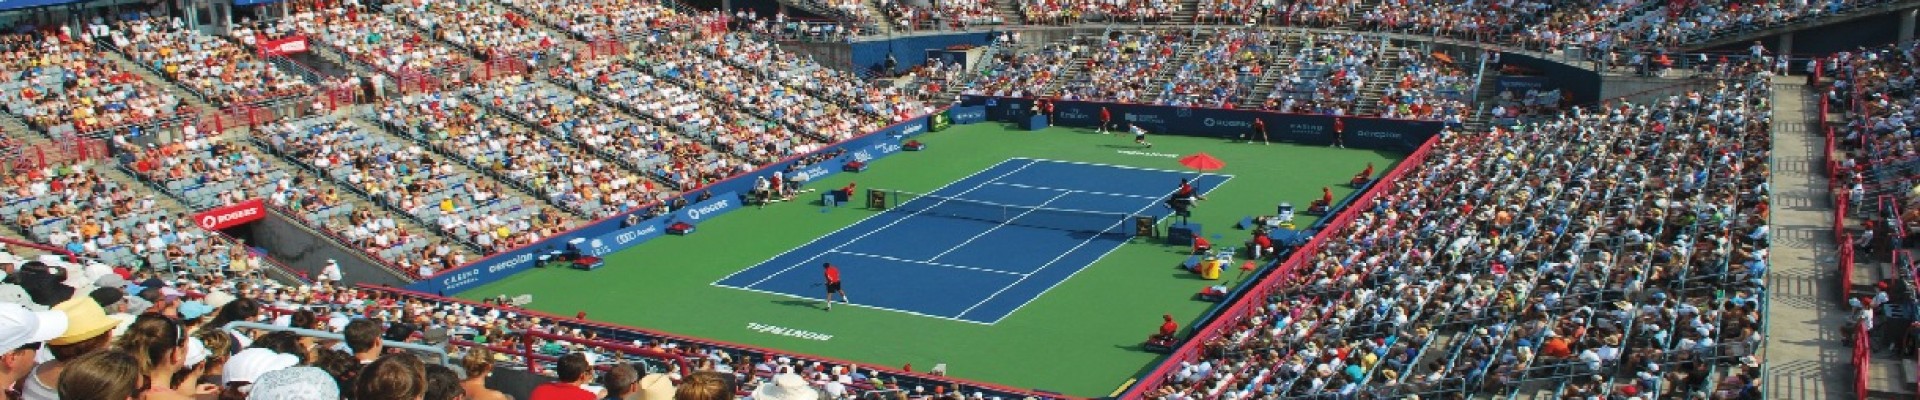 Kanada Açık - National Bank Open Tenis Biletleri